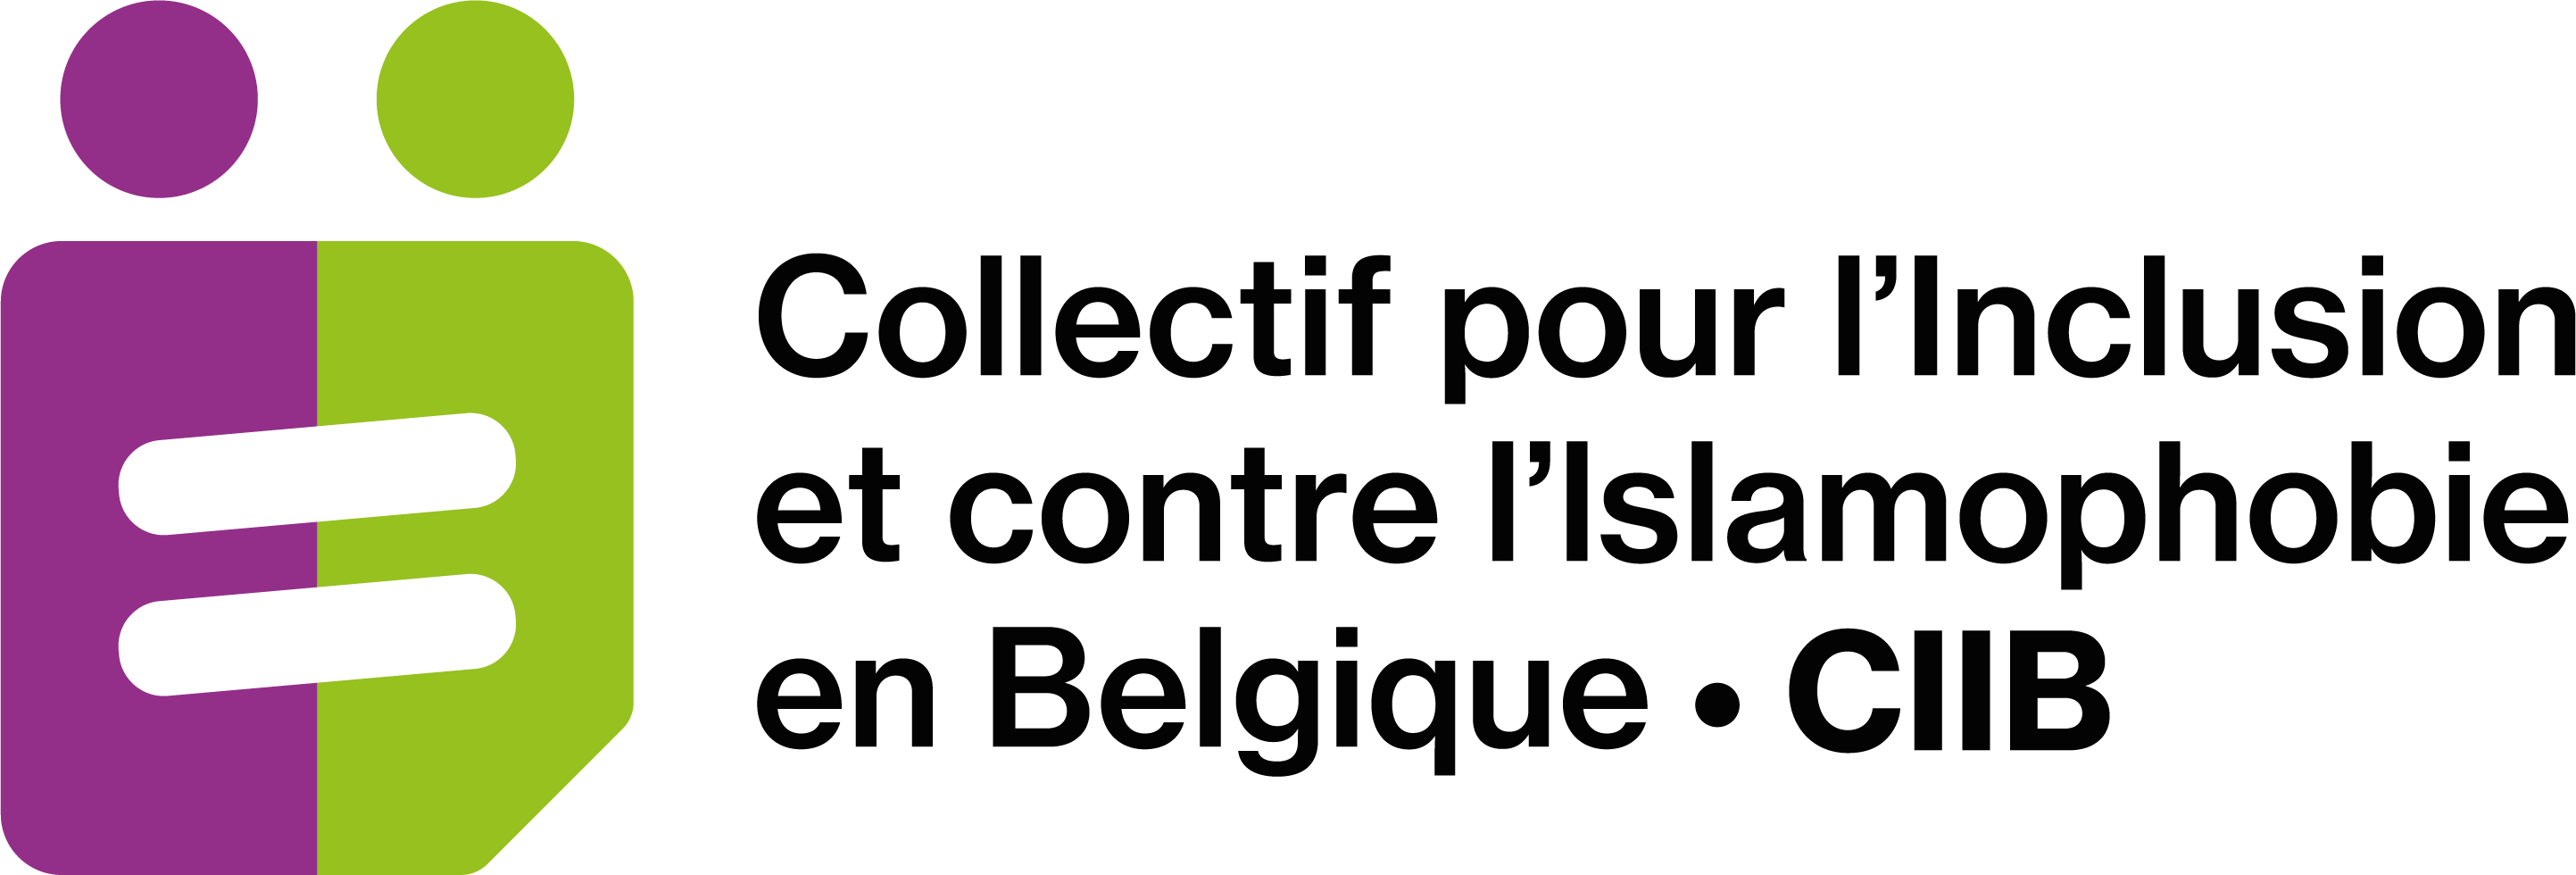 Collectif pour l’Inclusion et contre l’Islamophobie en Belgique